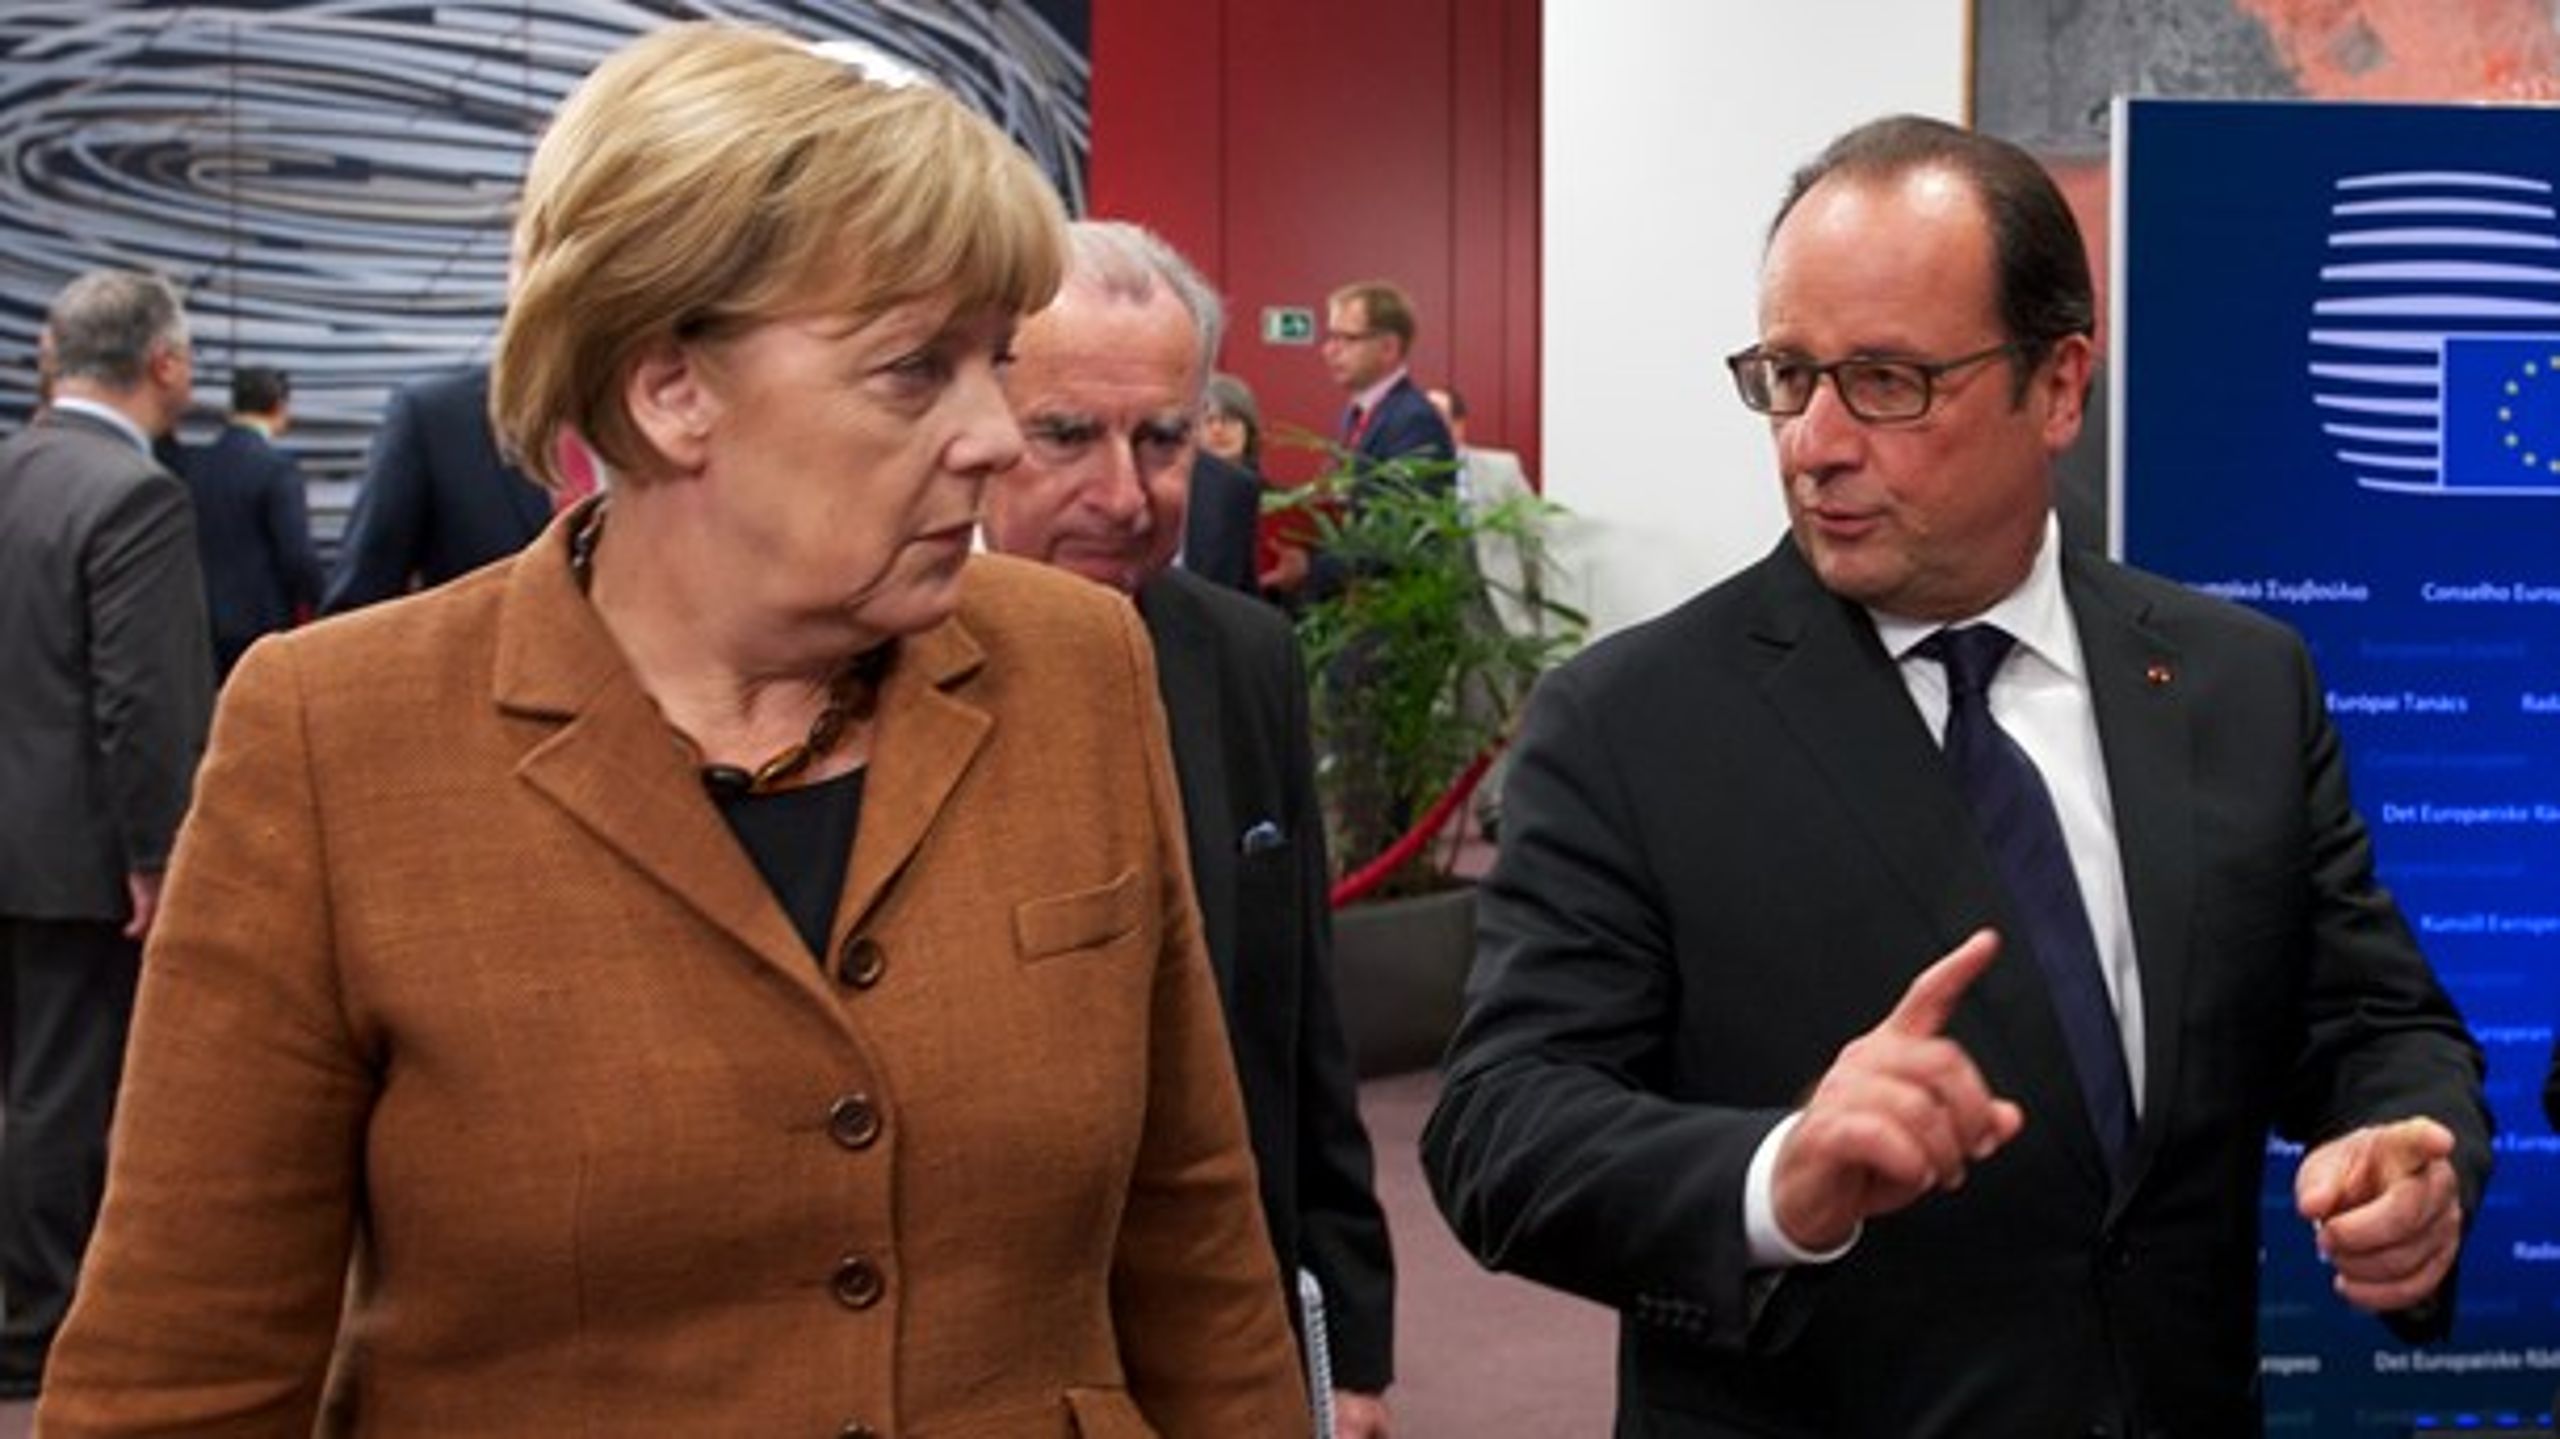 Den tyske kansler Angela Merkel og Frankrigs præsident François Hollande skal sammen med Italiens premierminister Matteo Renzi mandag diskutere Brexit og EU's håndtering af&nbsp;flygtningekrisen.